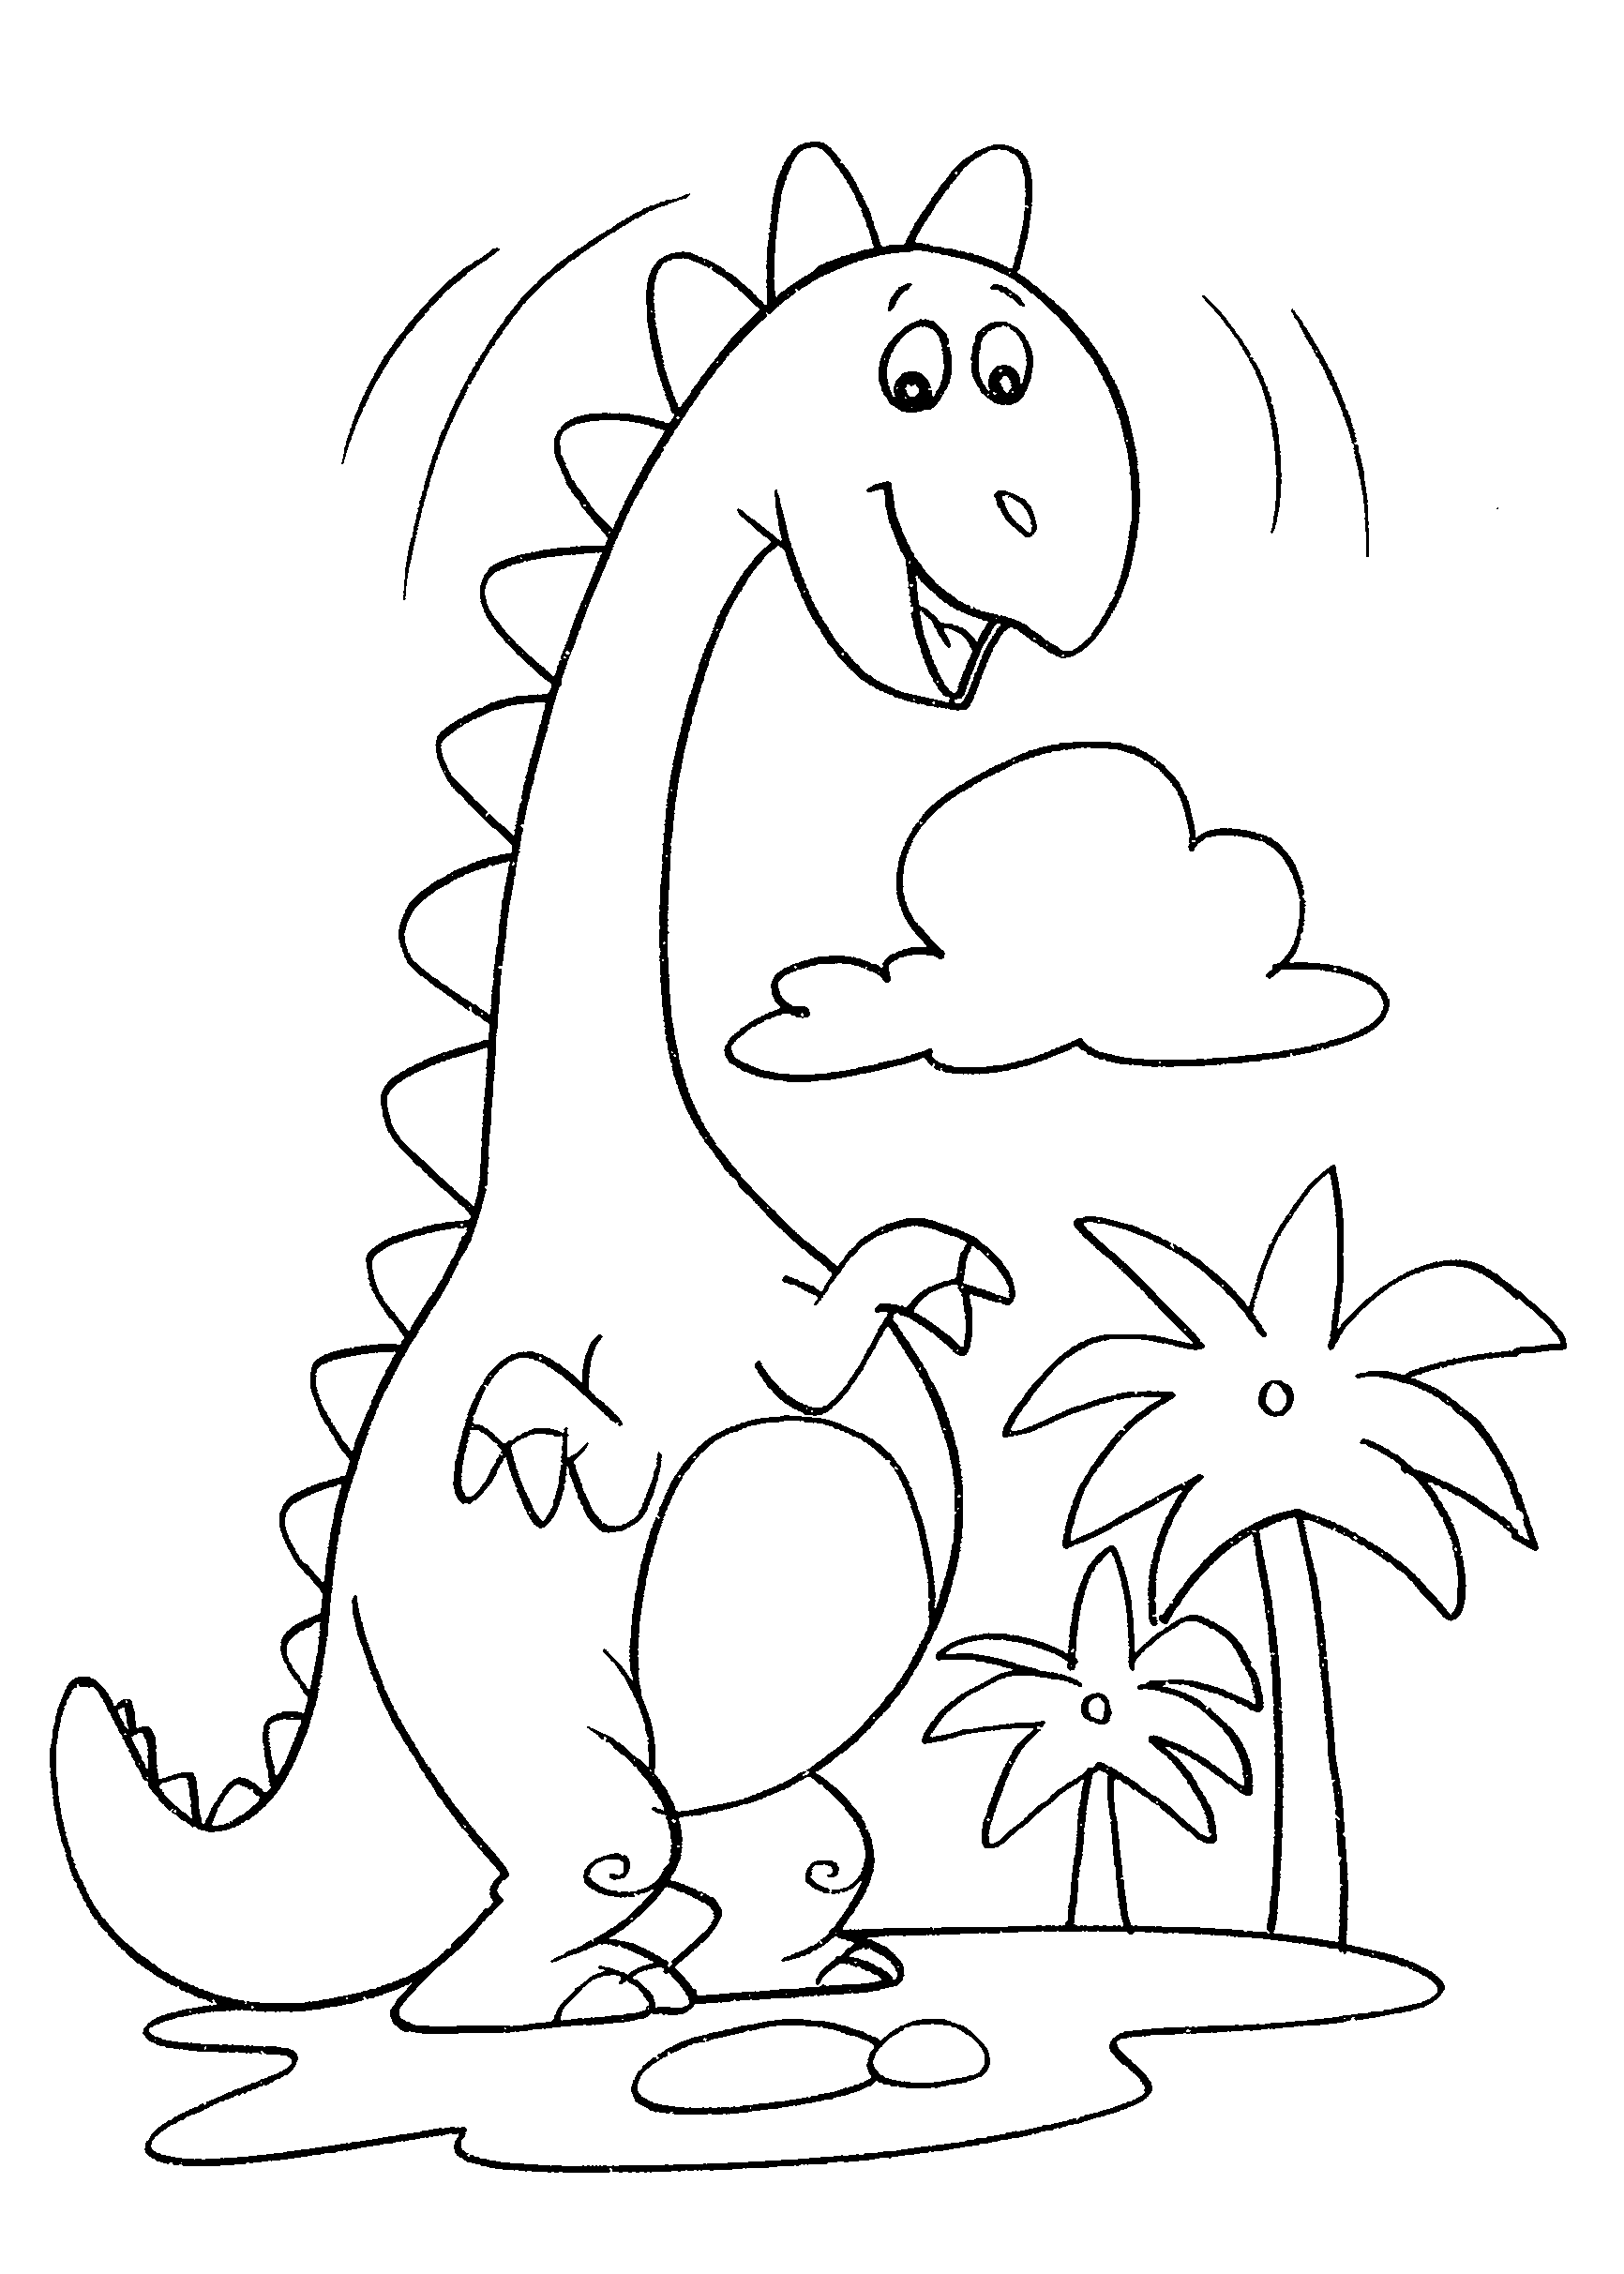 desenho-para-colorir-dinossauro